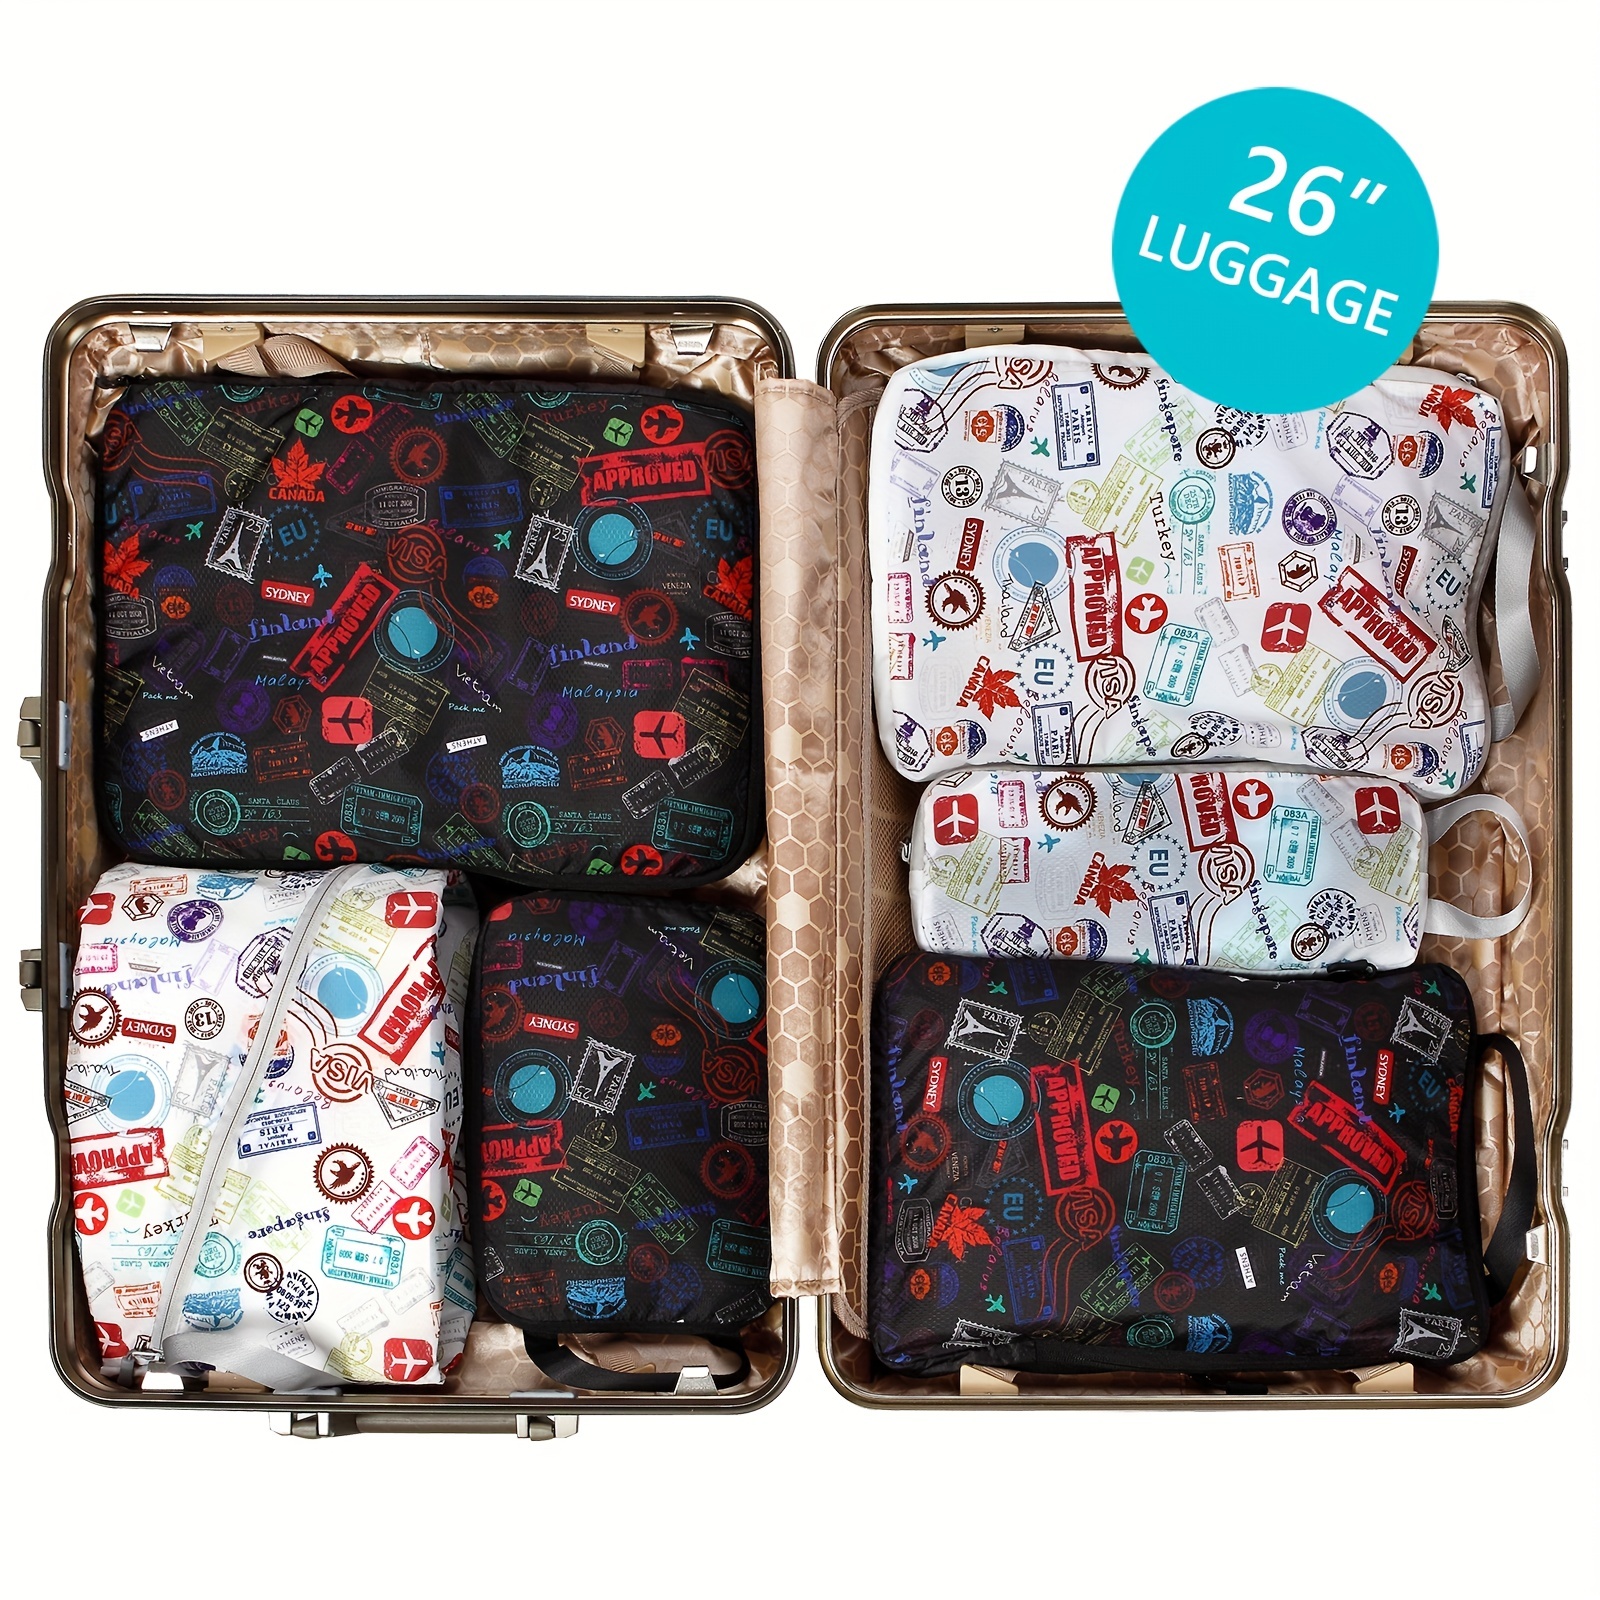 DIMJ Cubos de embalaje para maleta, bolsas organizadoras de equipaje, 8  cubos de equipaje para viajes, bolsas organizadoras ligeras de maleta con